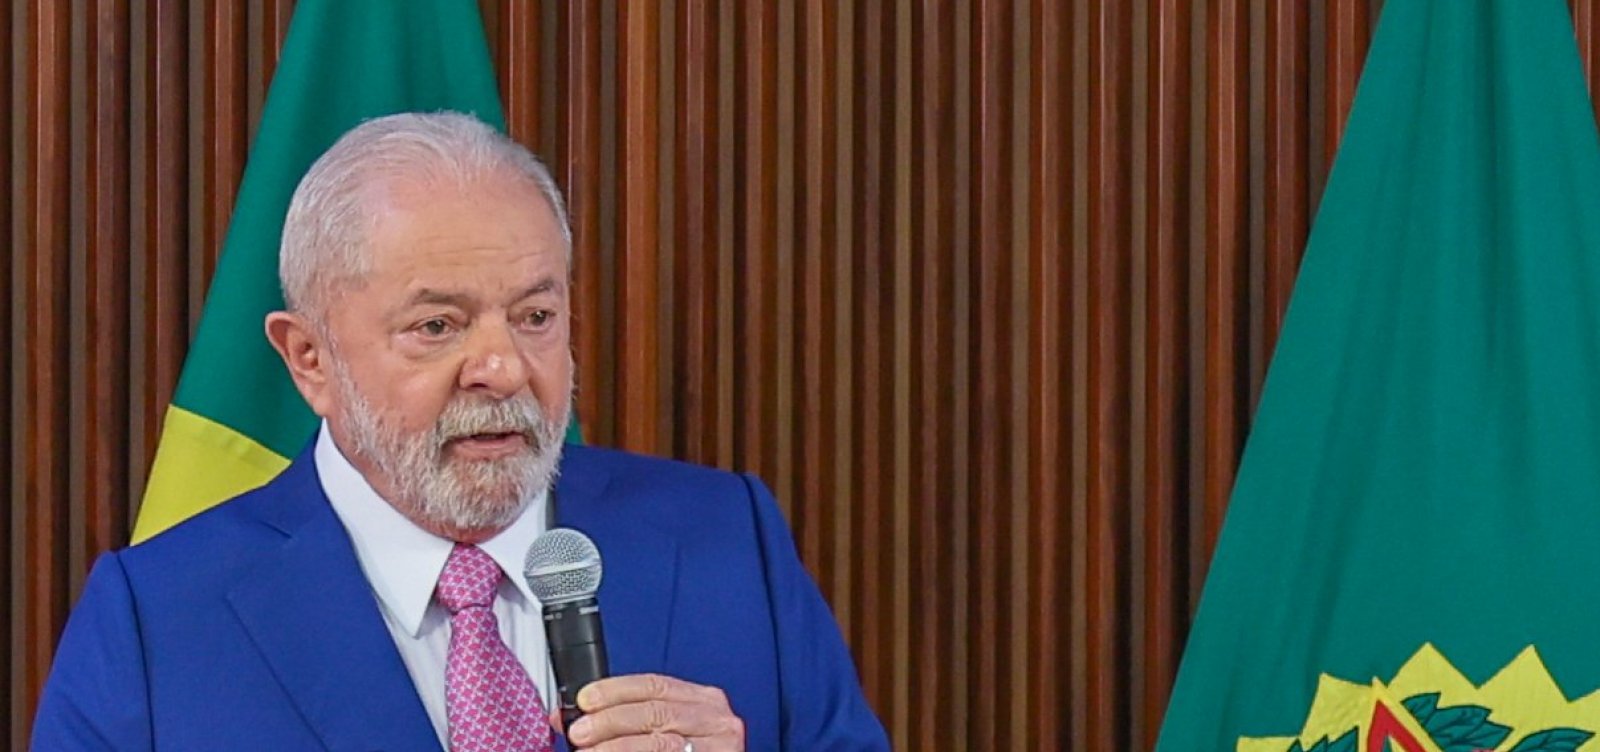 Após expor desconfiança, Lula dispensa 40 militares do Palácio do Alvorada